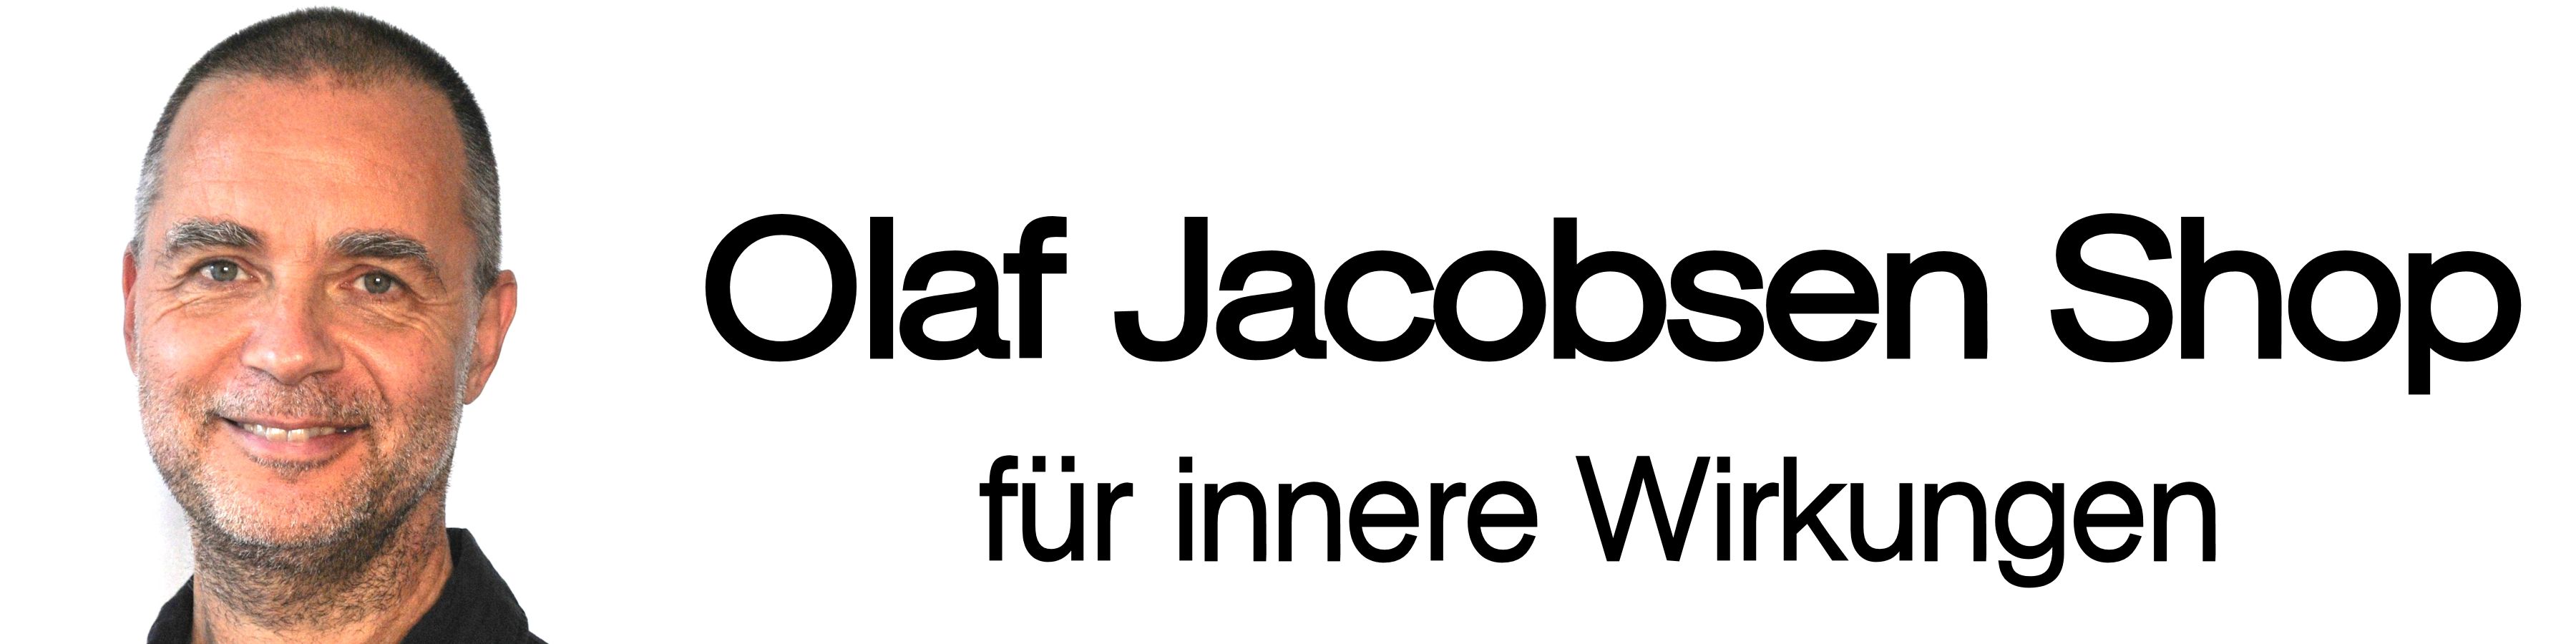 Olaf Jacobsen Shop Logo